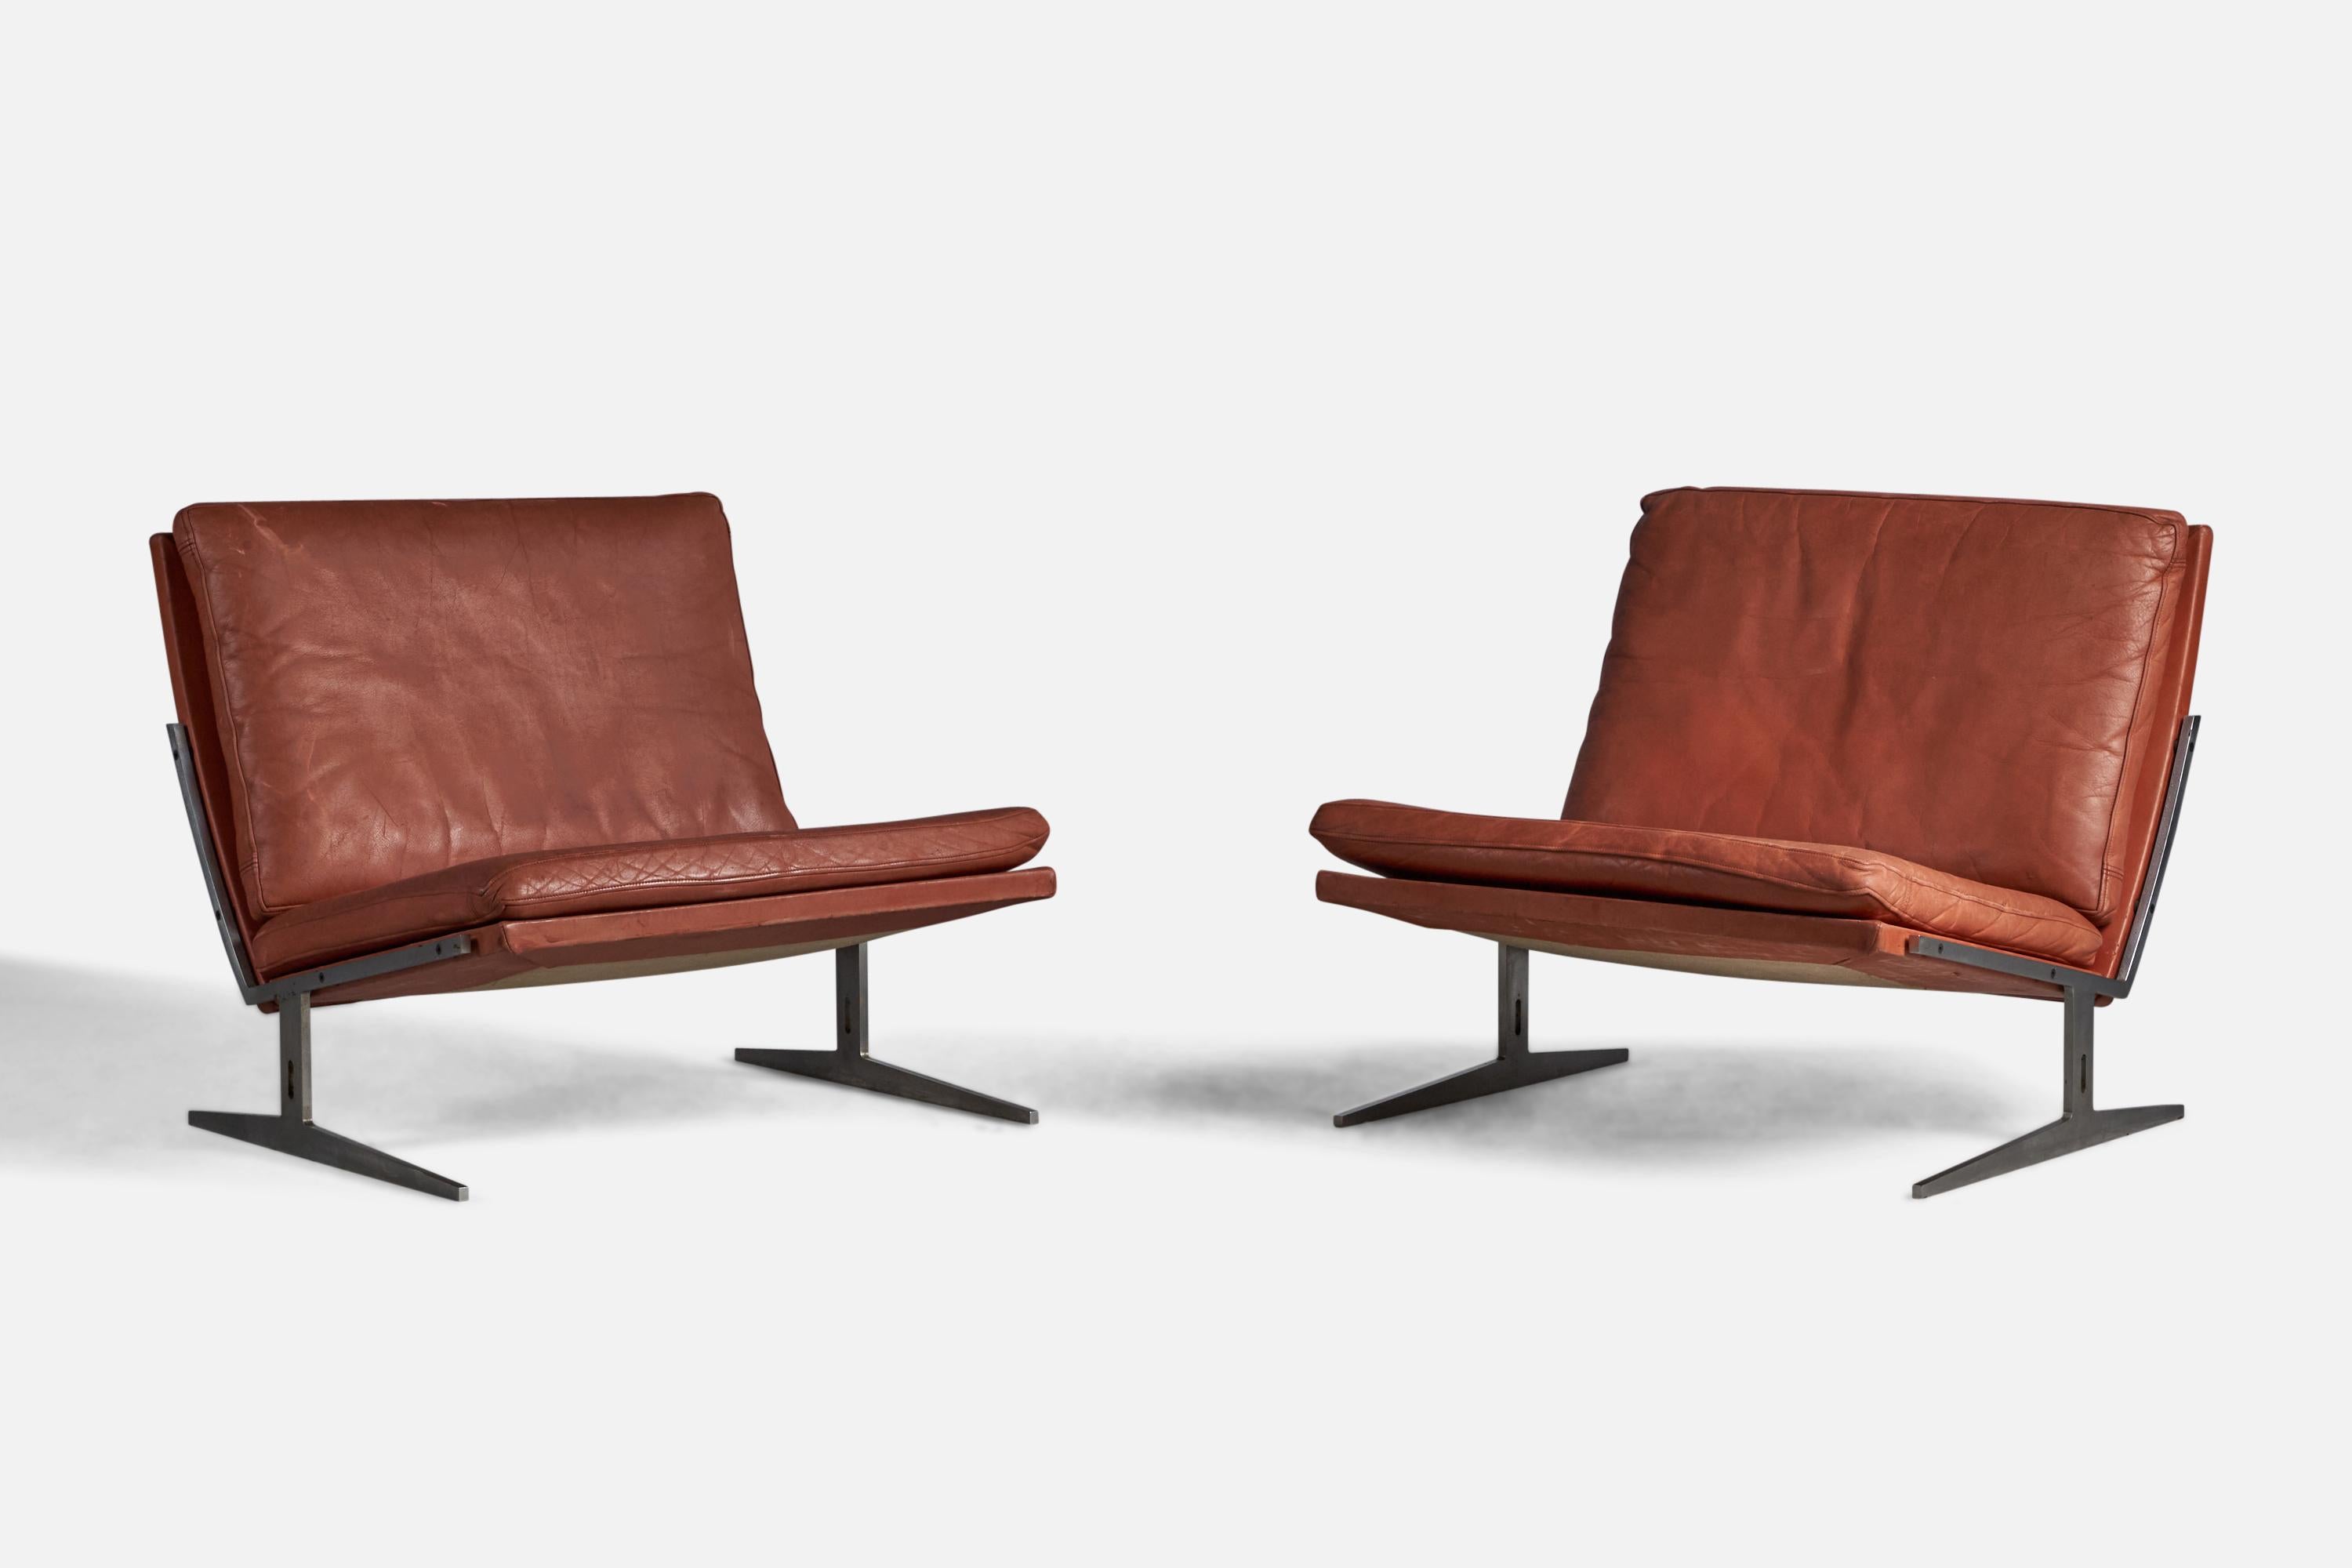 Ein Paar Lounge- oder Pantoffelstühle aus Stahl und rotem Leder, entworfen von Preben Fabricius & Jørgen Kastholm und hergestellt von Bo-Ex, Dänemark, 1960.

12